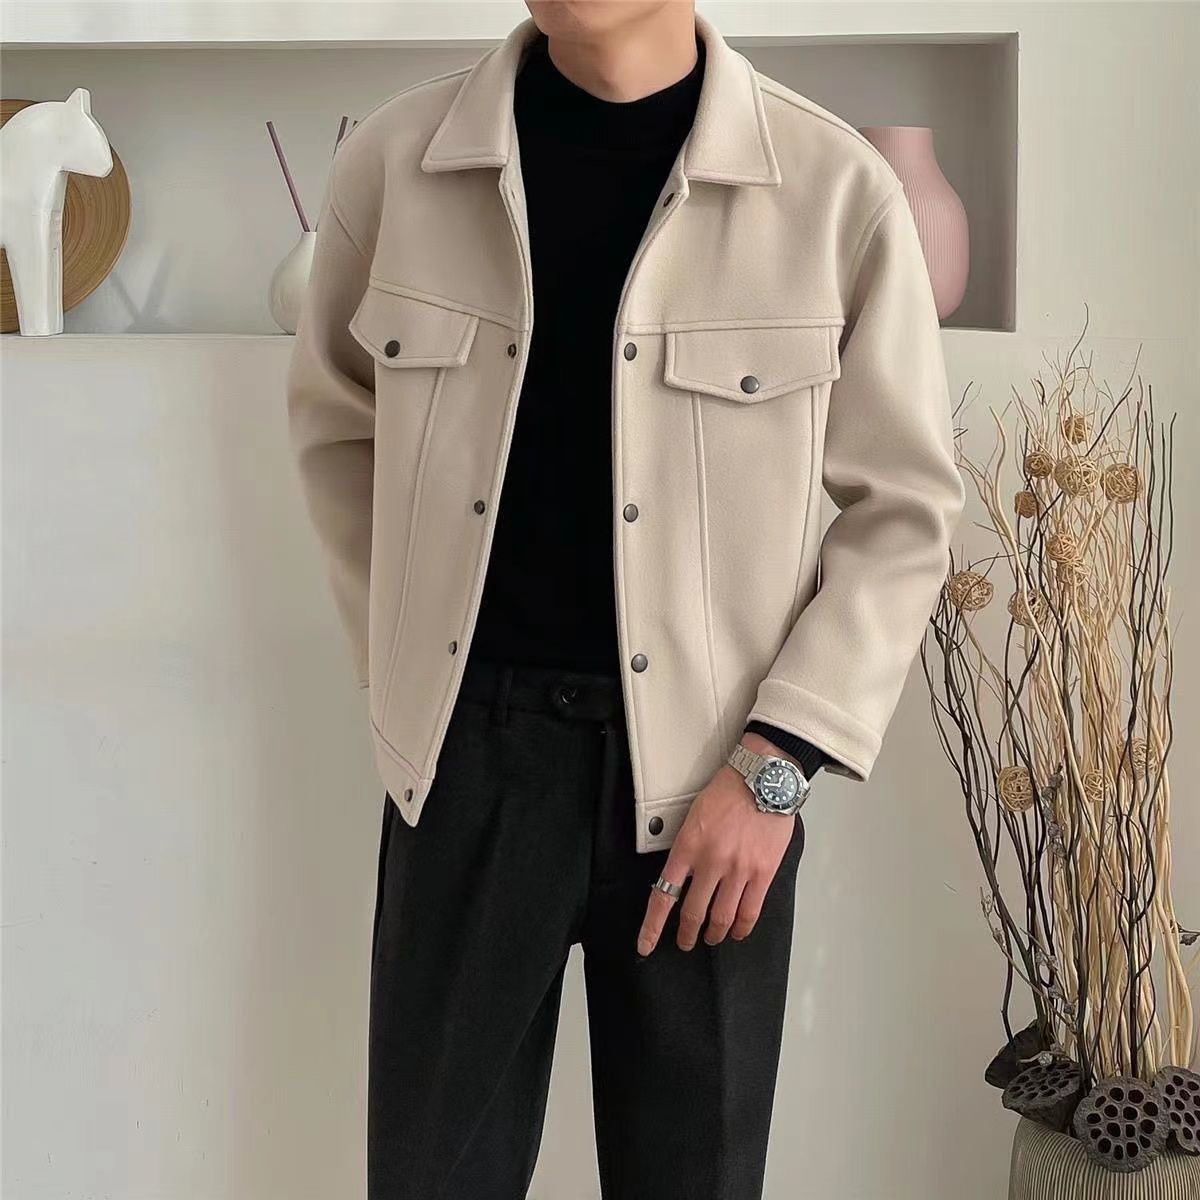 СКИДКА ! Высококачественная мужская  шерстяная куртка (осенняя)